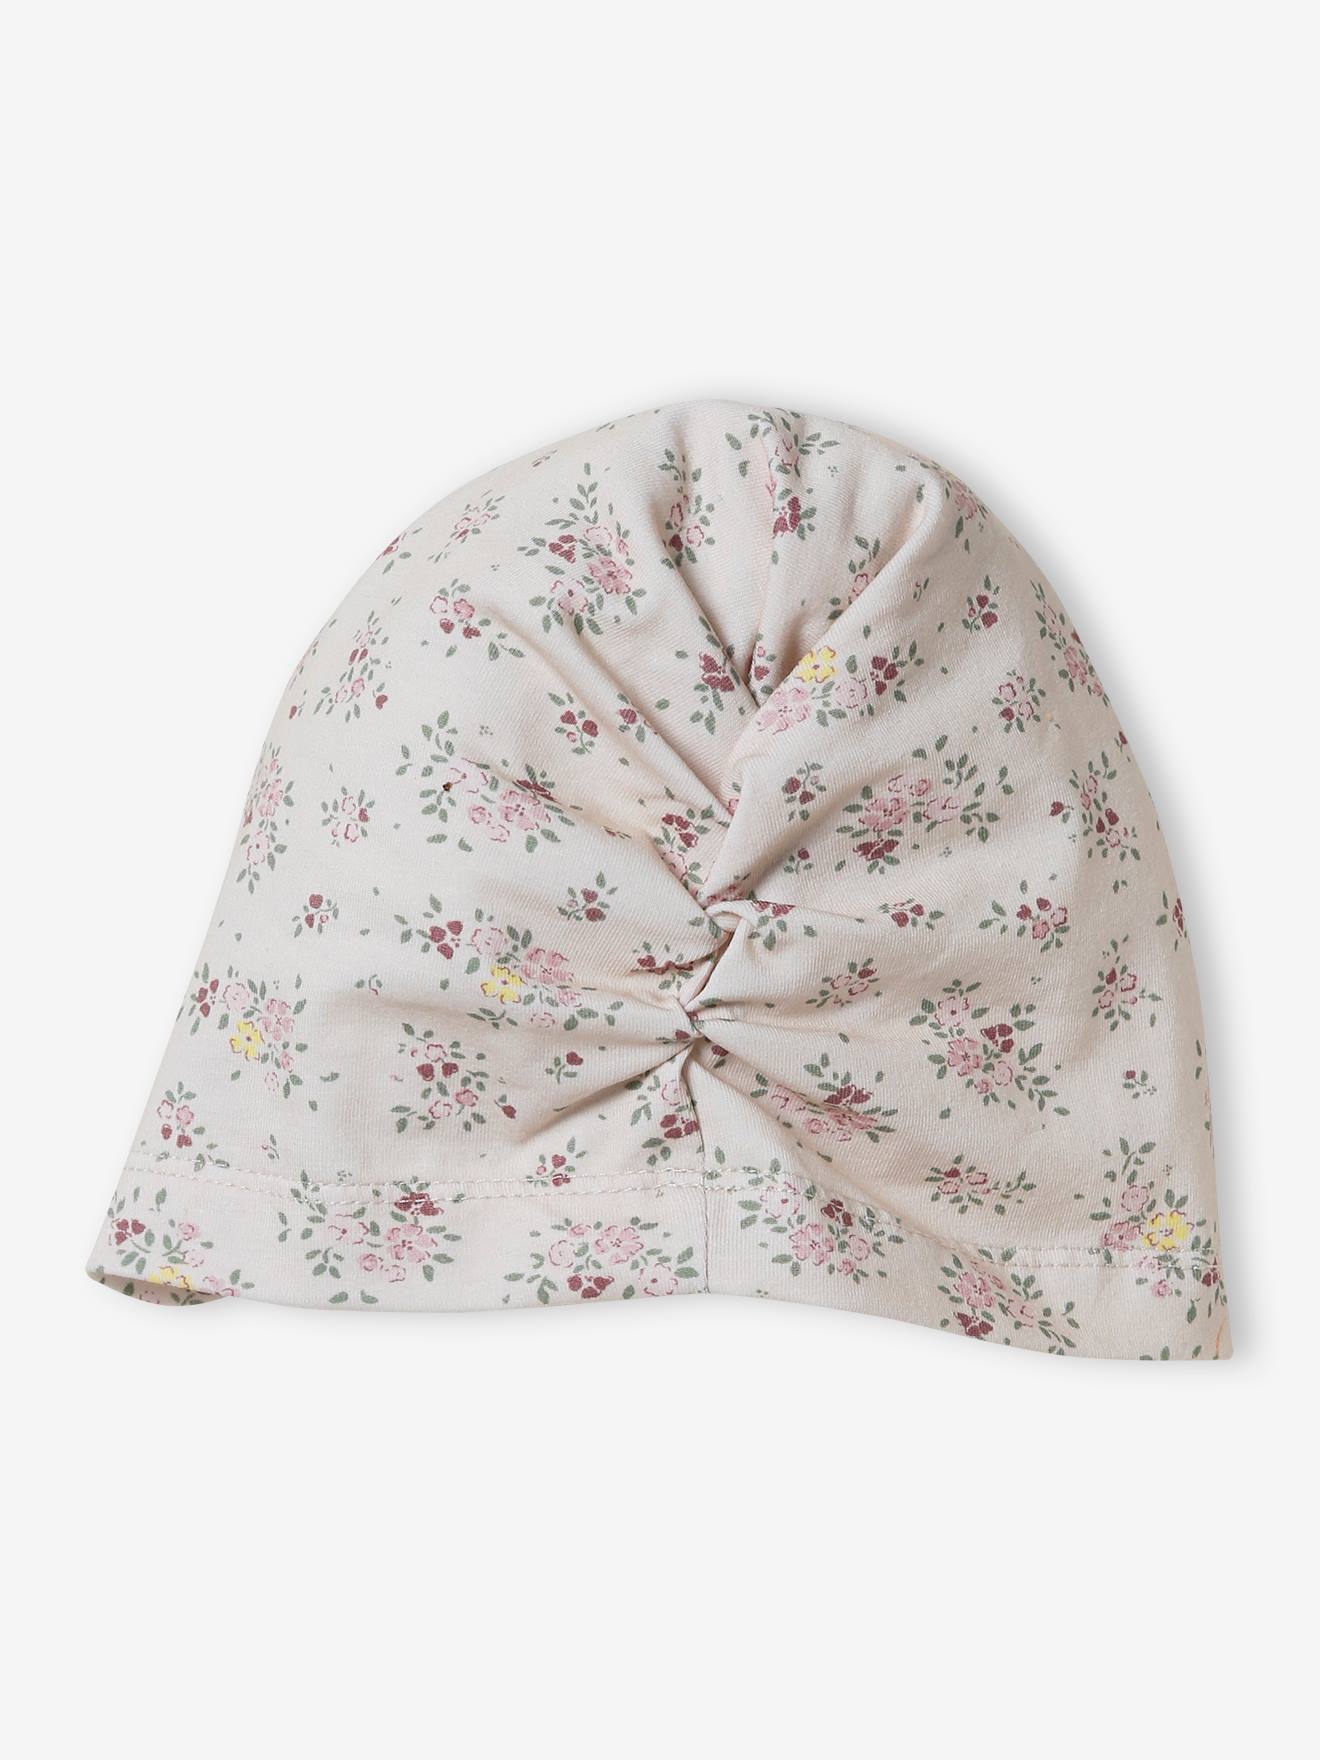 Acheter Chapeau pour bébé fille de 0 à 3 ans, grand nœud, bonnet en coton  doux, couleur unie, Turban pour enfants, casquette à nœud doux